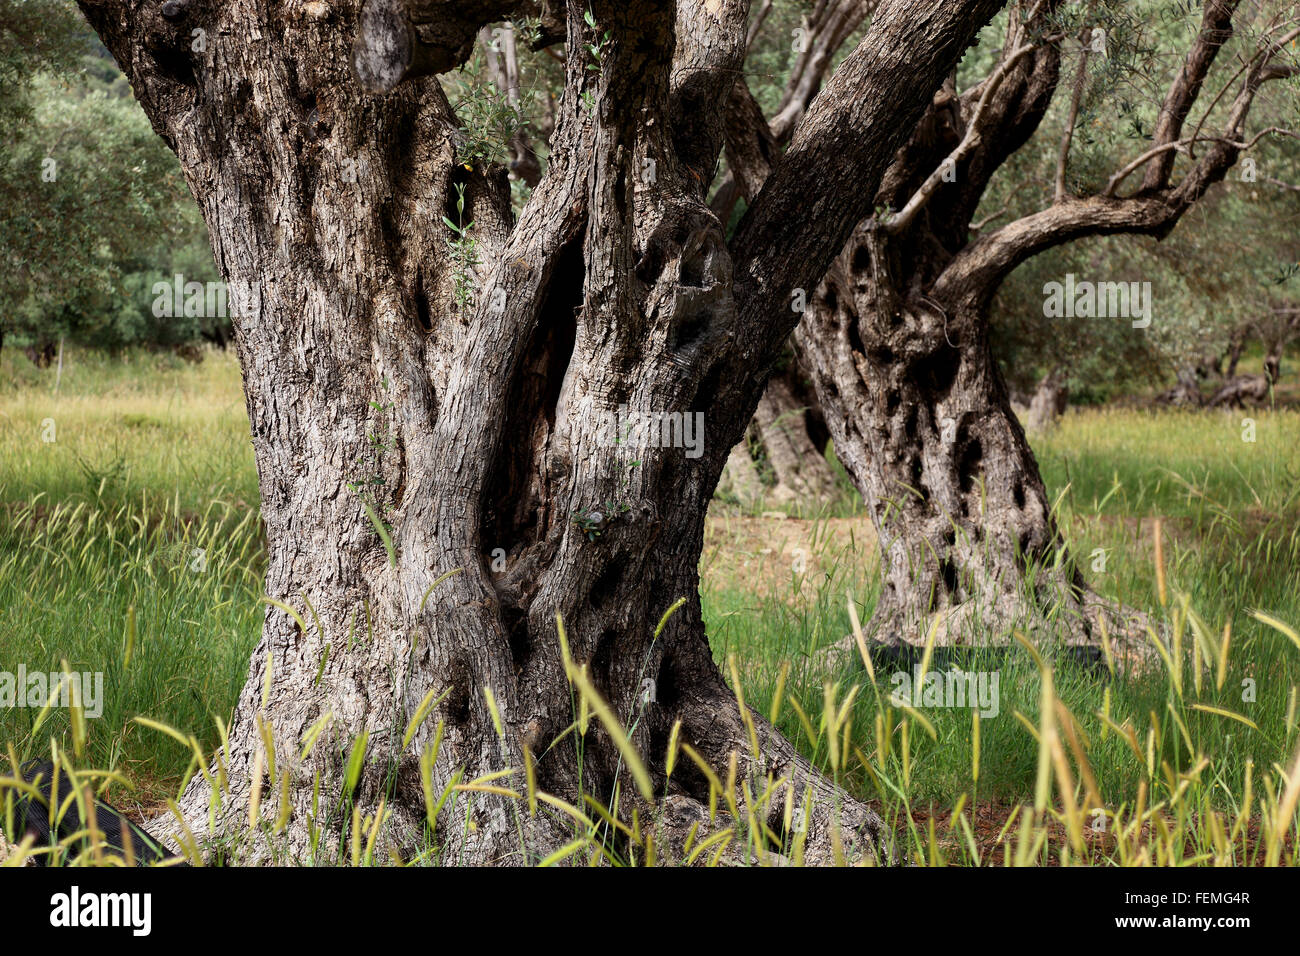 Creta, ulivi secolari, buffi più spessa tronco, in legno di olivo Foto Stock